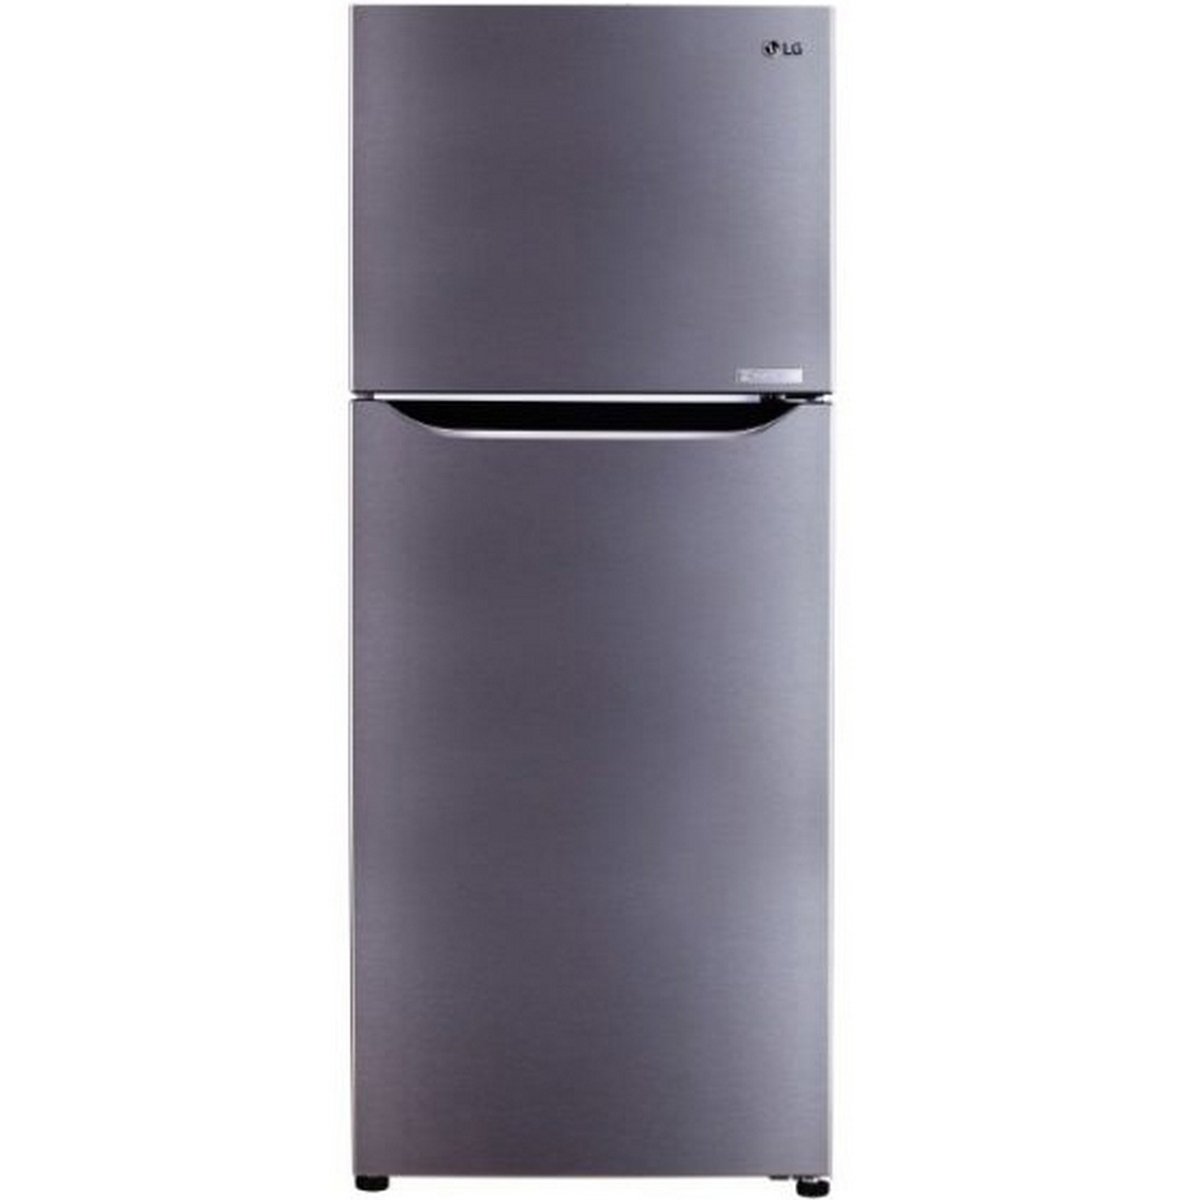 LG Double Door Refrigerator GRC312SLBN 260Ltr